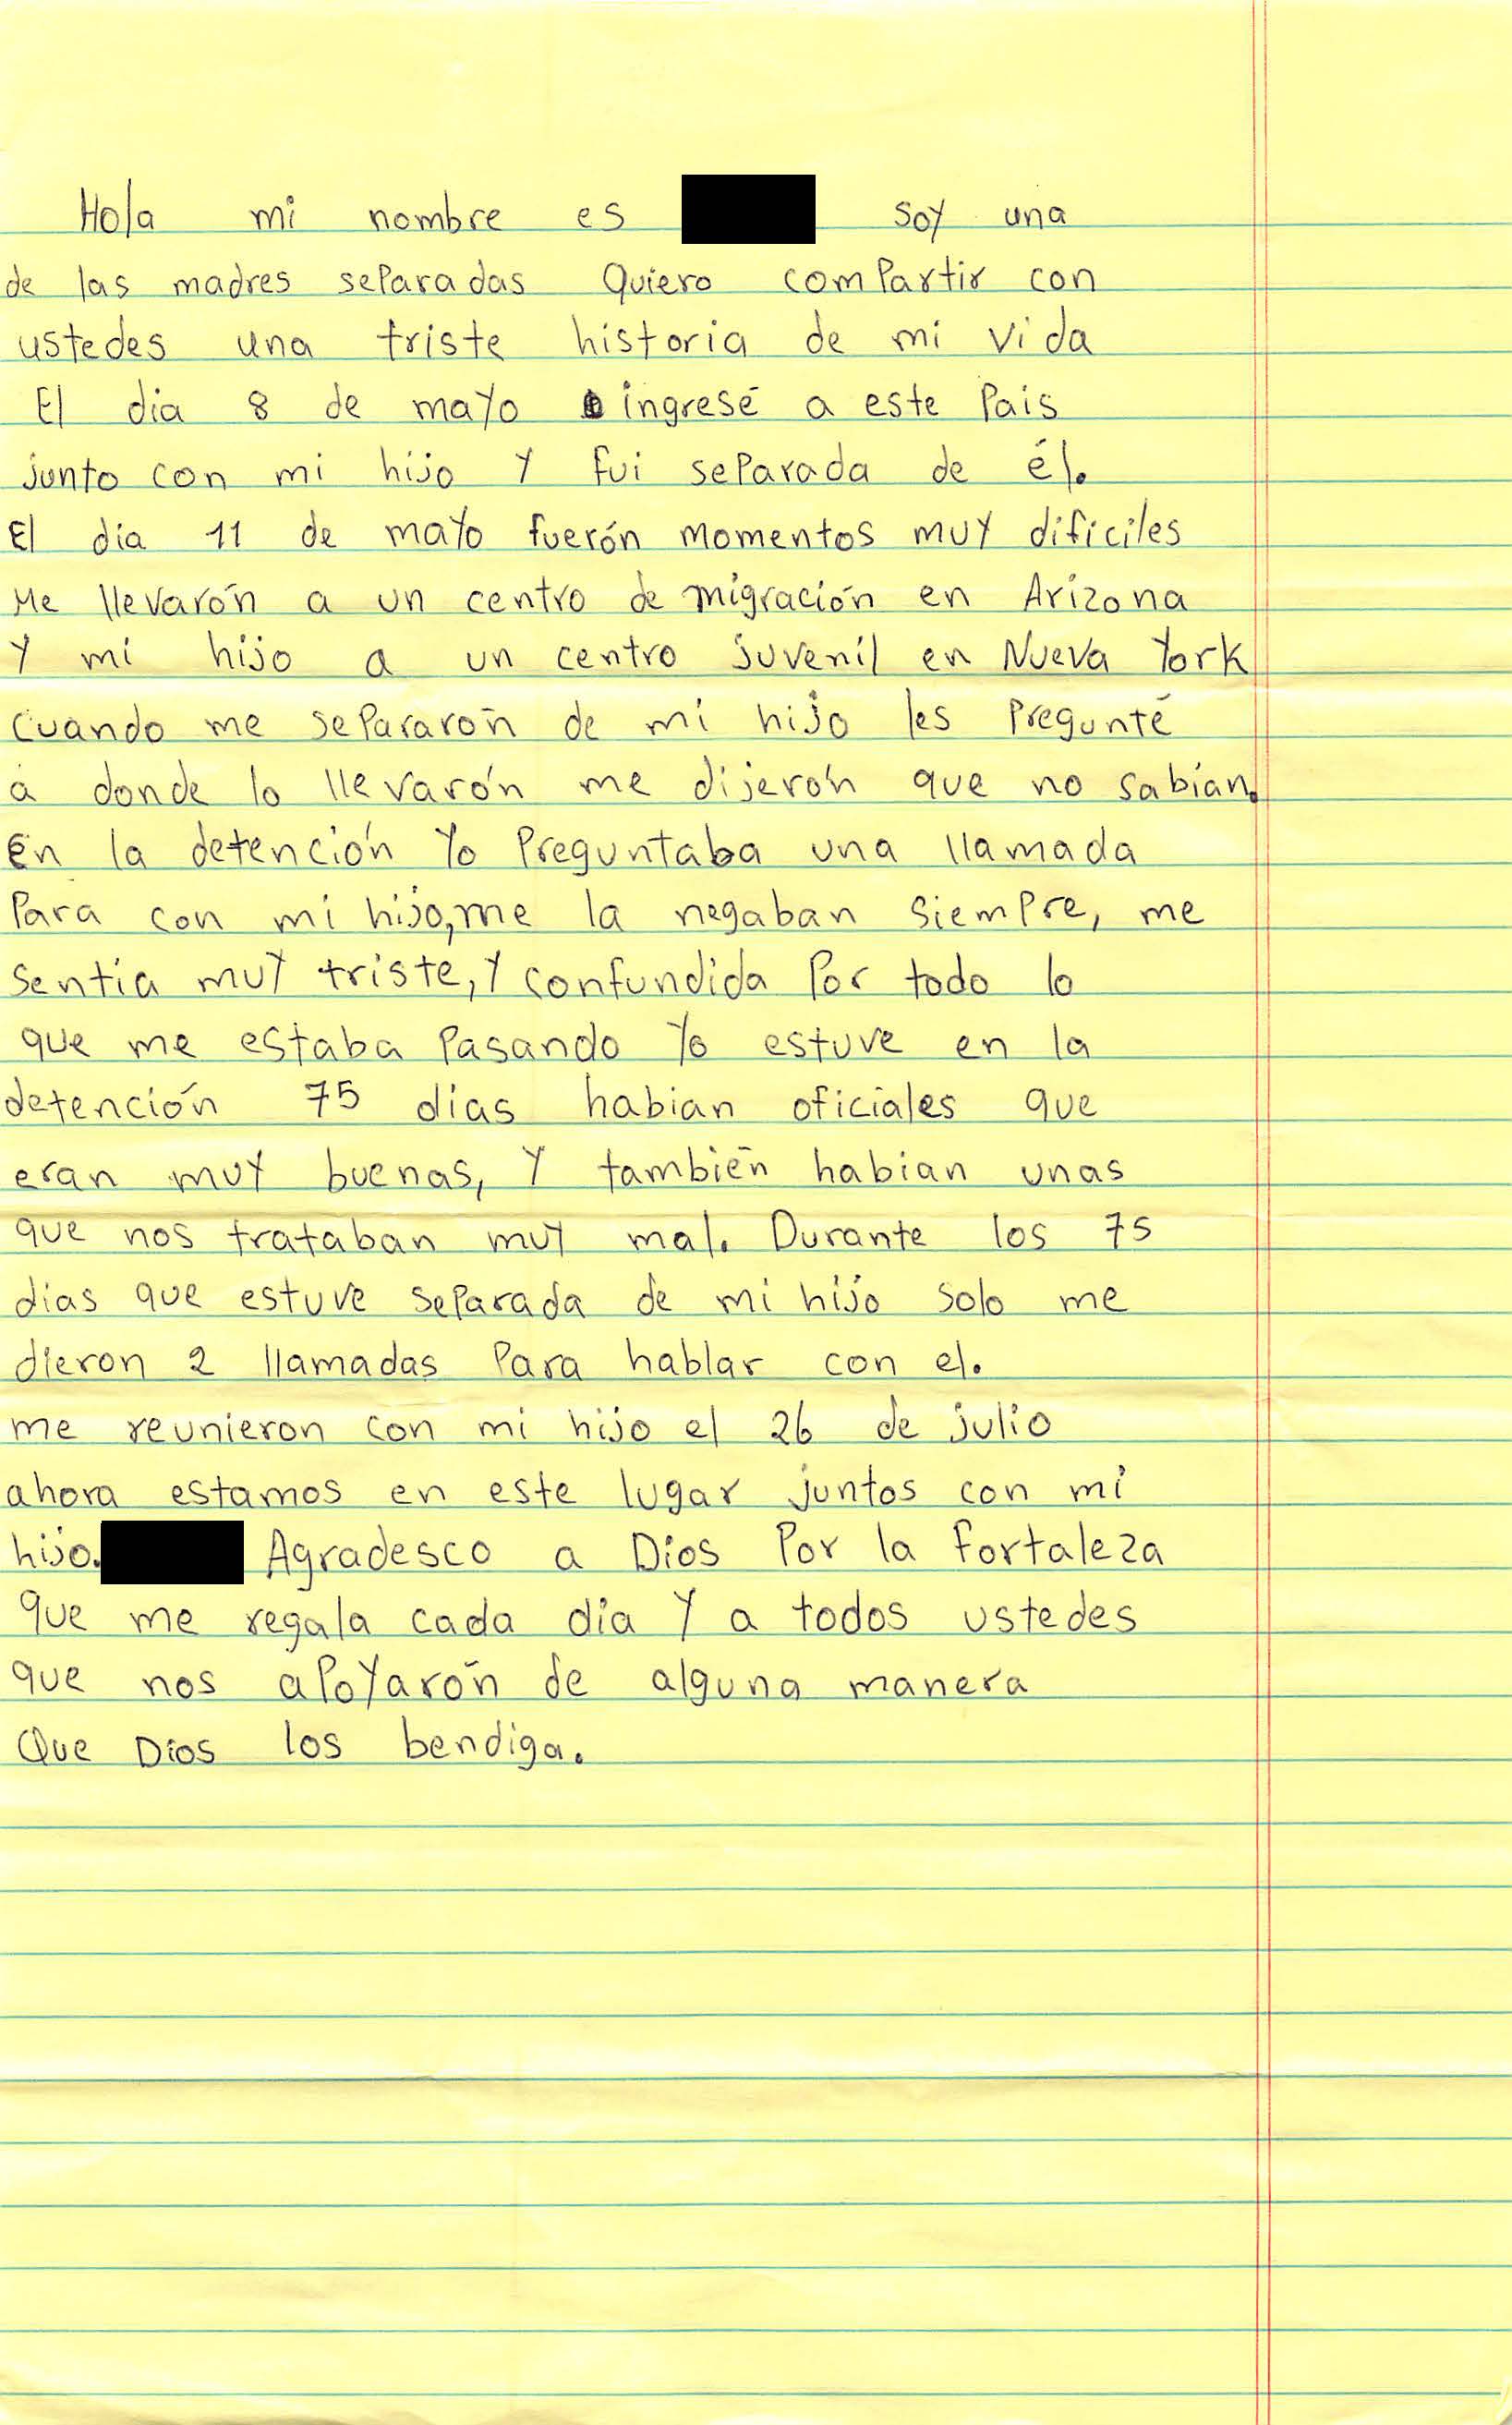 Rosa's Handwritten Letter